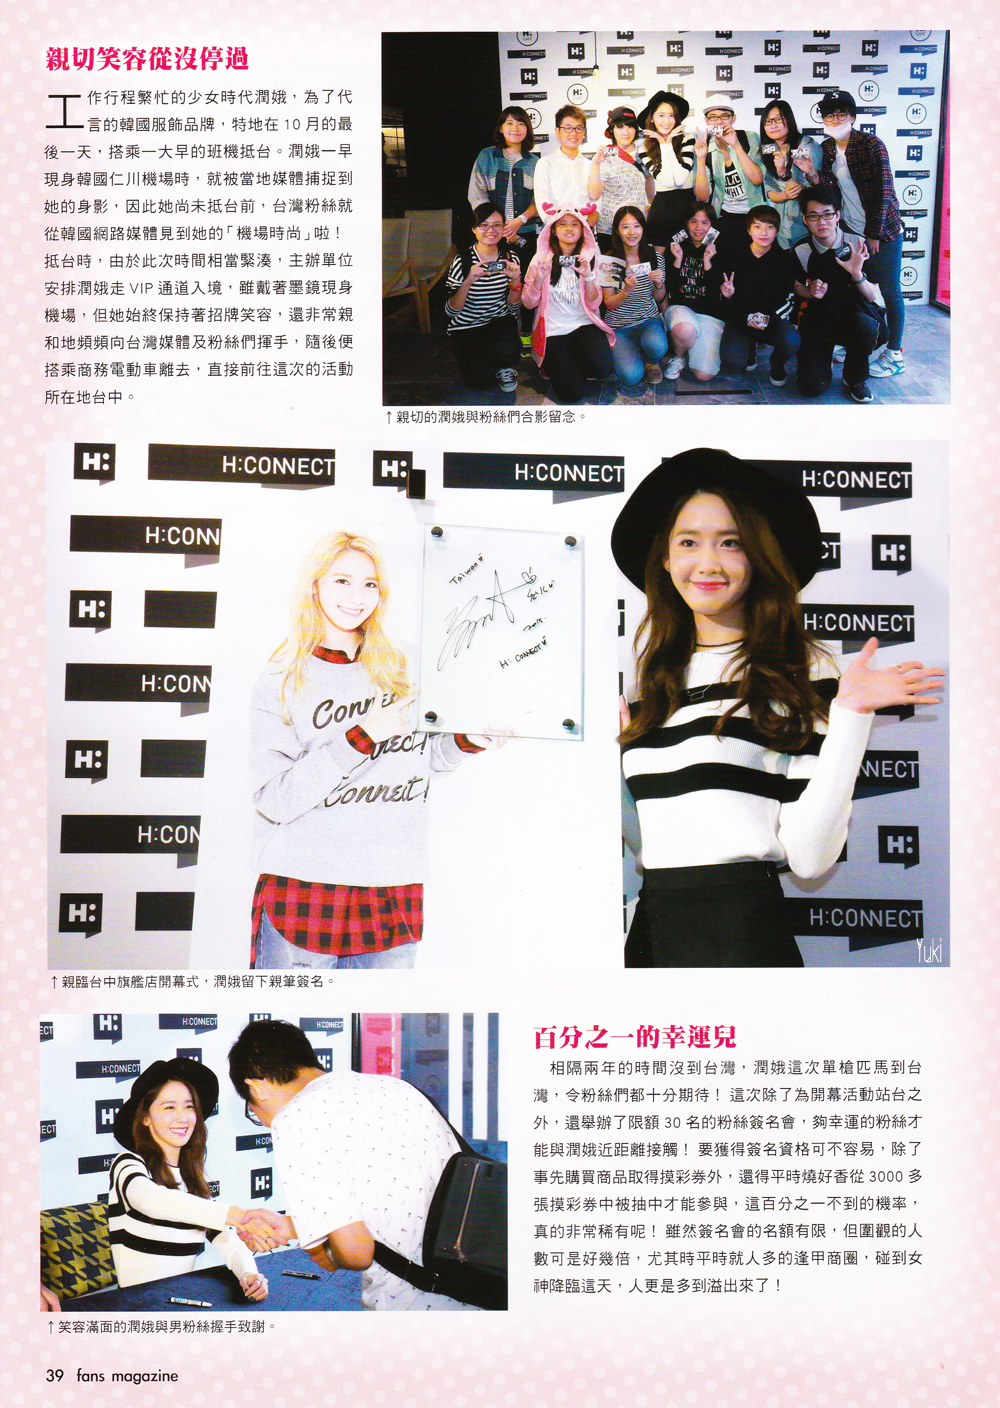 [PIC][31-10-2015]YoonA khởi hành đi Đài Loan để tham dự Fansign cho thương hiệu "H:CONNECT" vào sáng nay - Page 6 2471BA335677C0C912B3E2